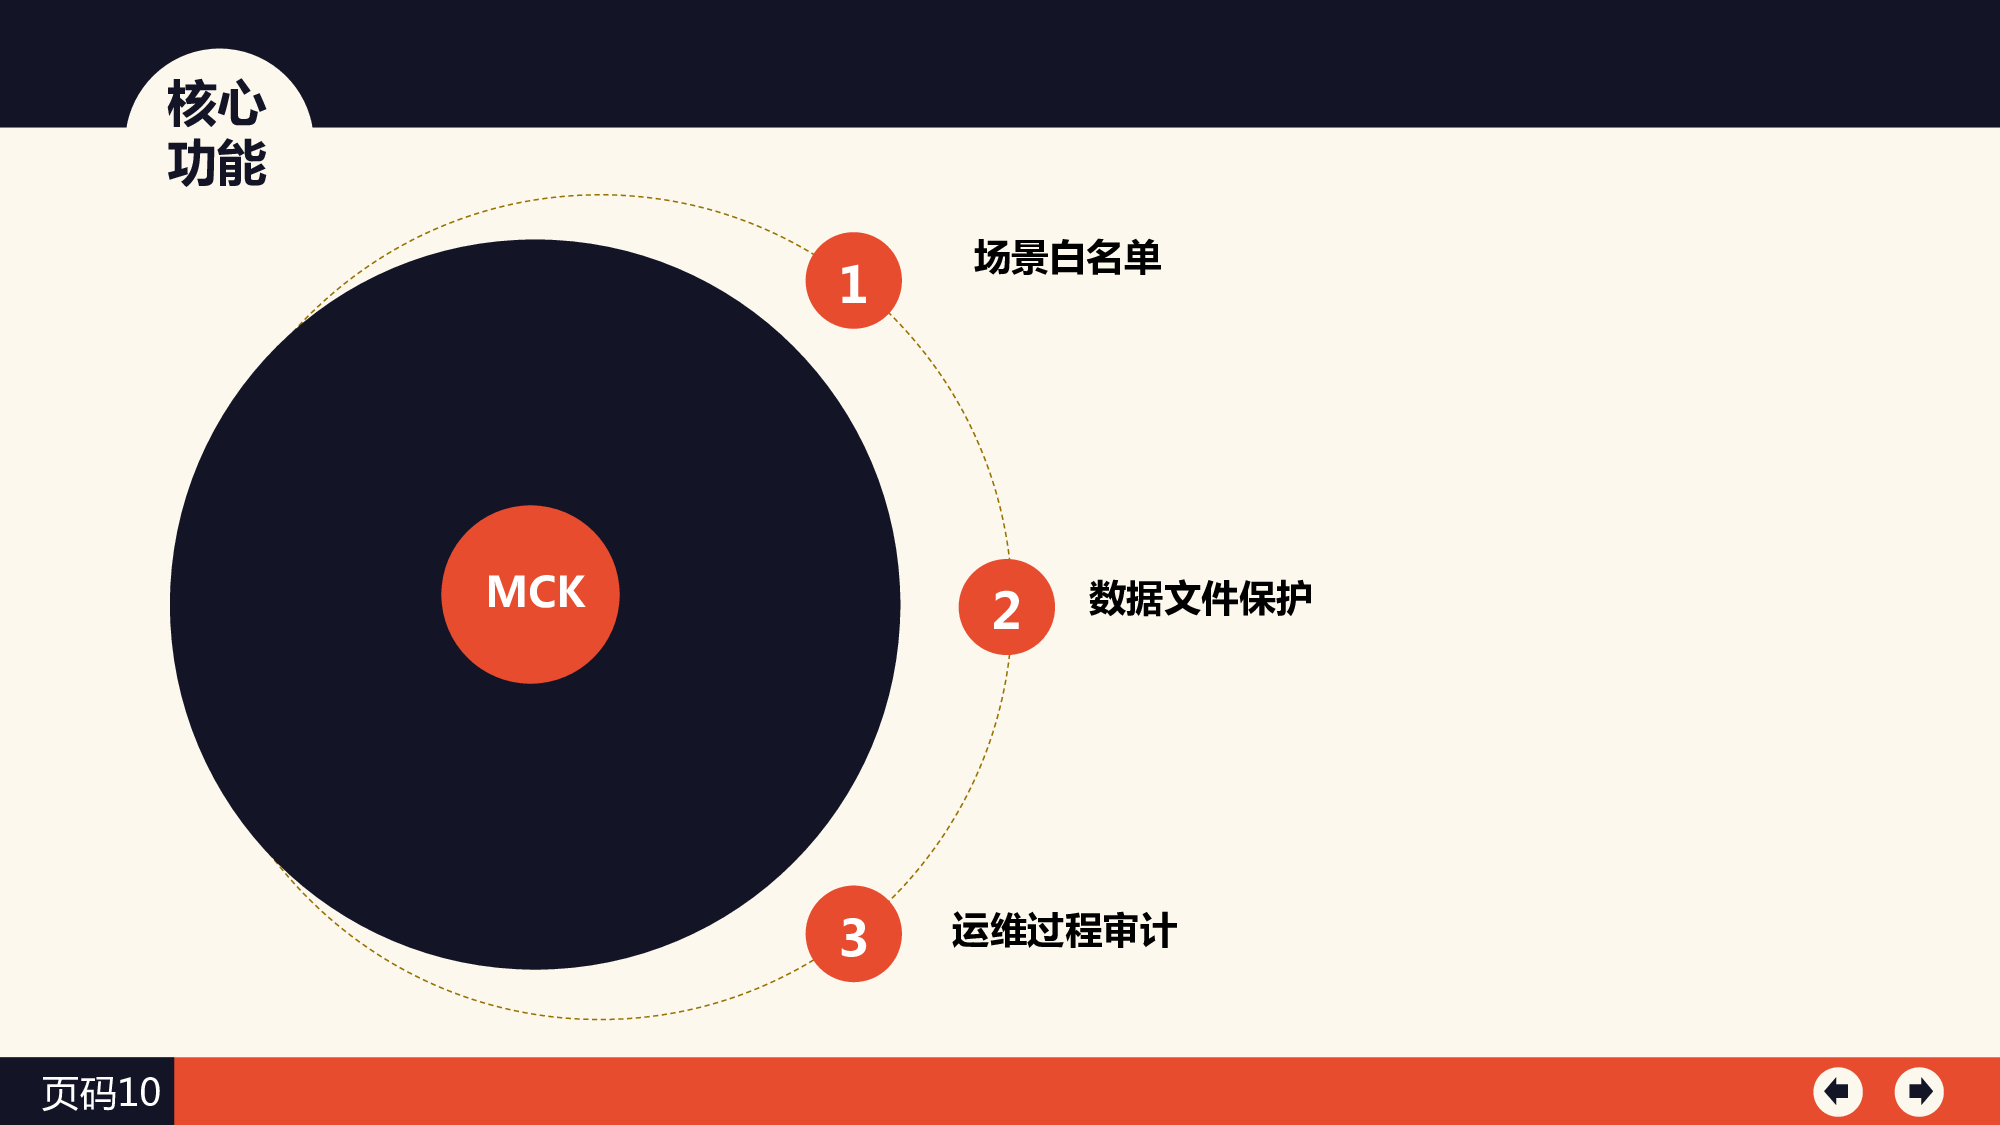 MCK服务器主机加固系统图片